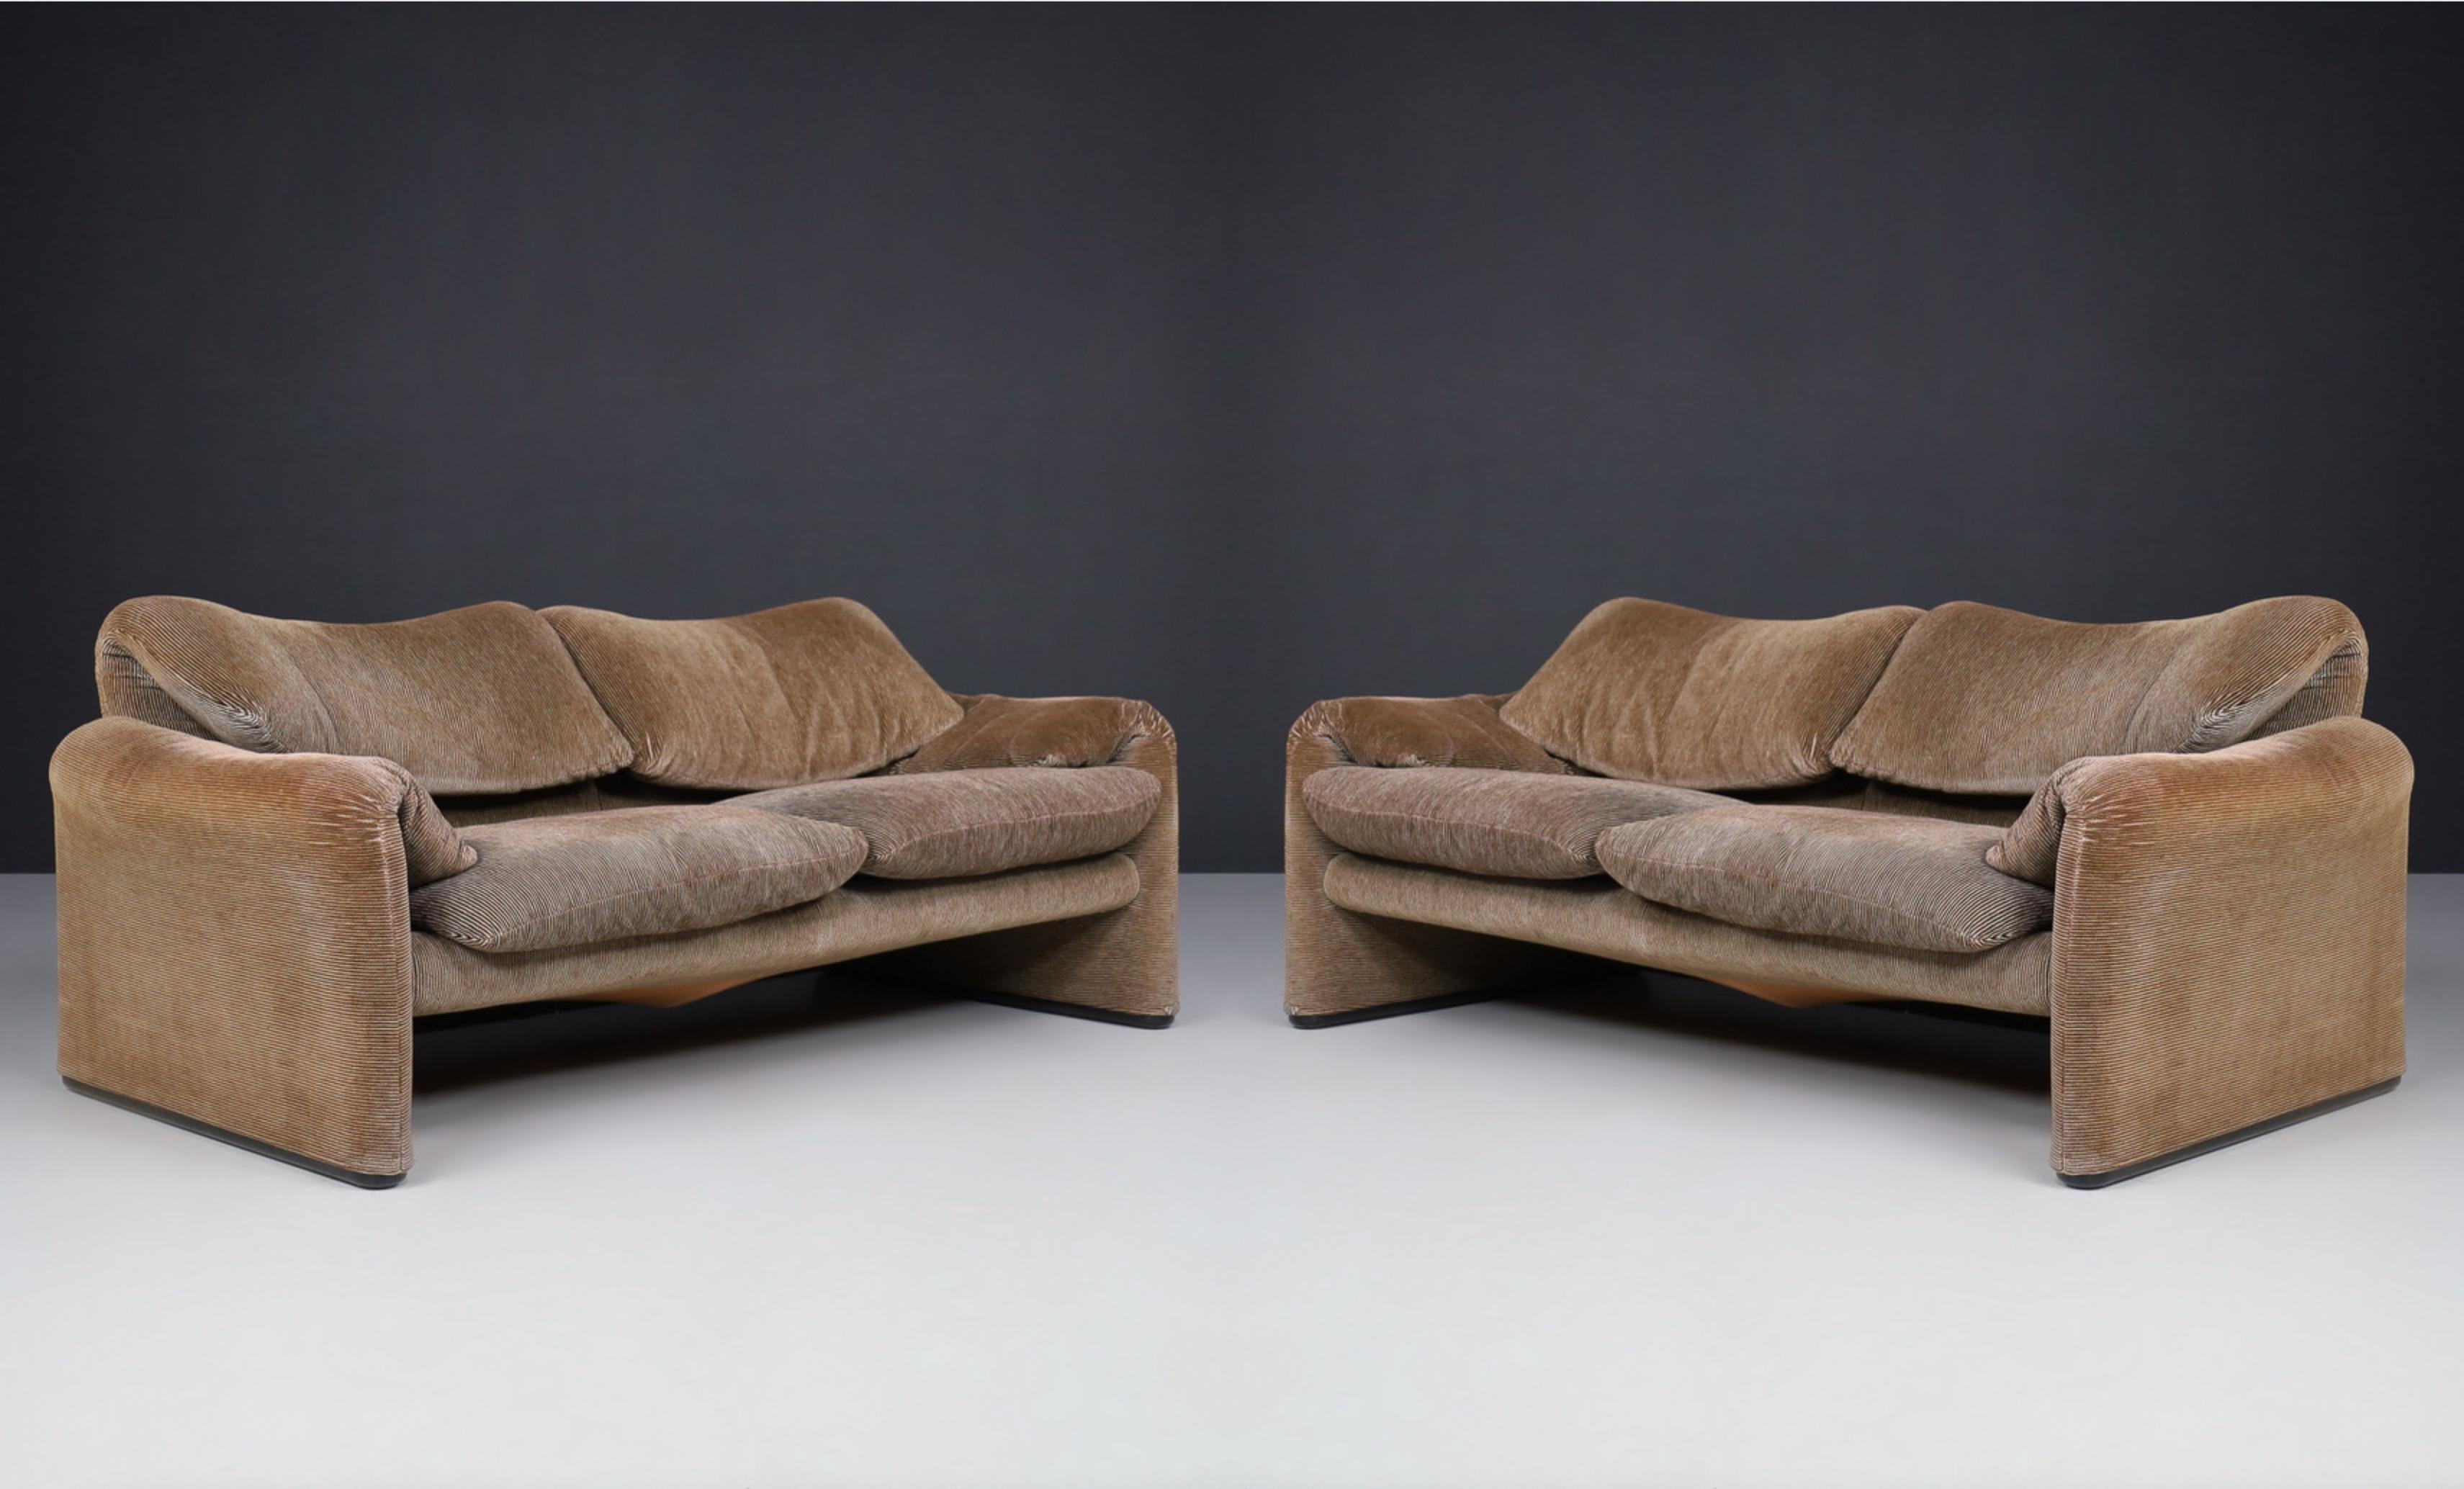 Maralunga Sofas von Vico Magistretti für Cassina, 1970er Jahre

Eine beispielhafte Version der kultigen Maralunga-Sofas in originalem Vintage-Stoff. Der Gesamteindruck dieser zweisitzigen Couch ist ausgezeichnet. Bitte beachten Sie, dass das